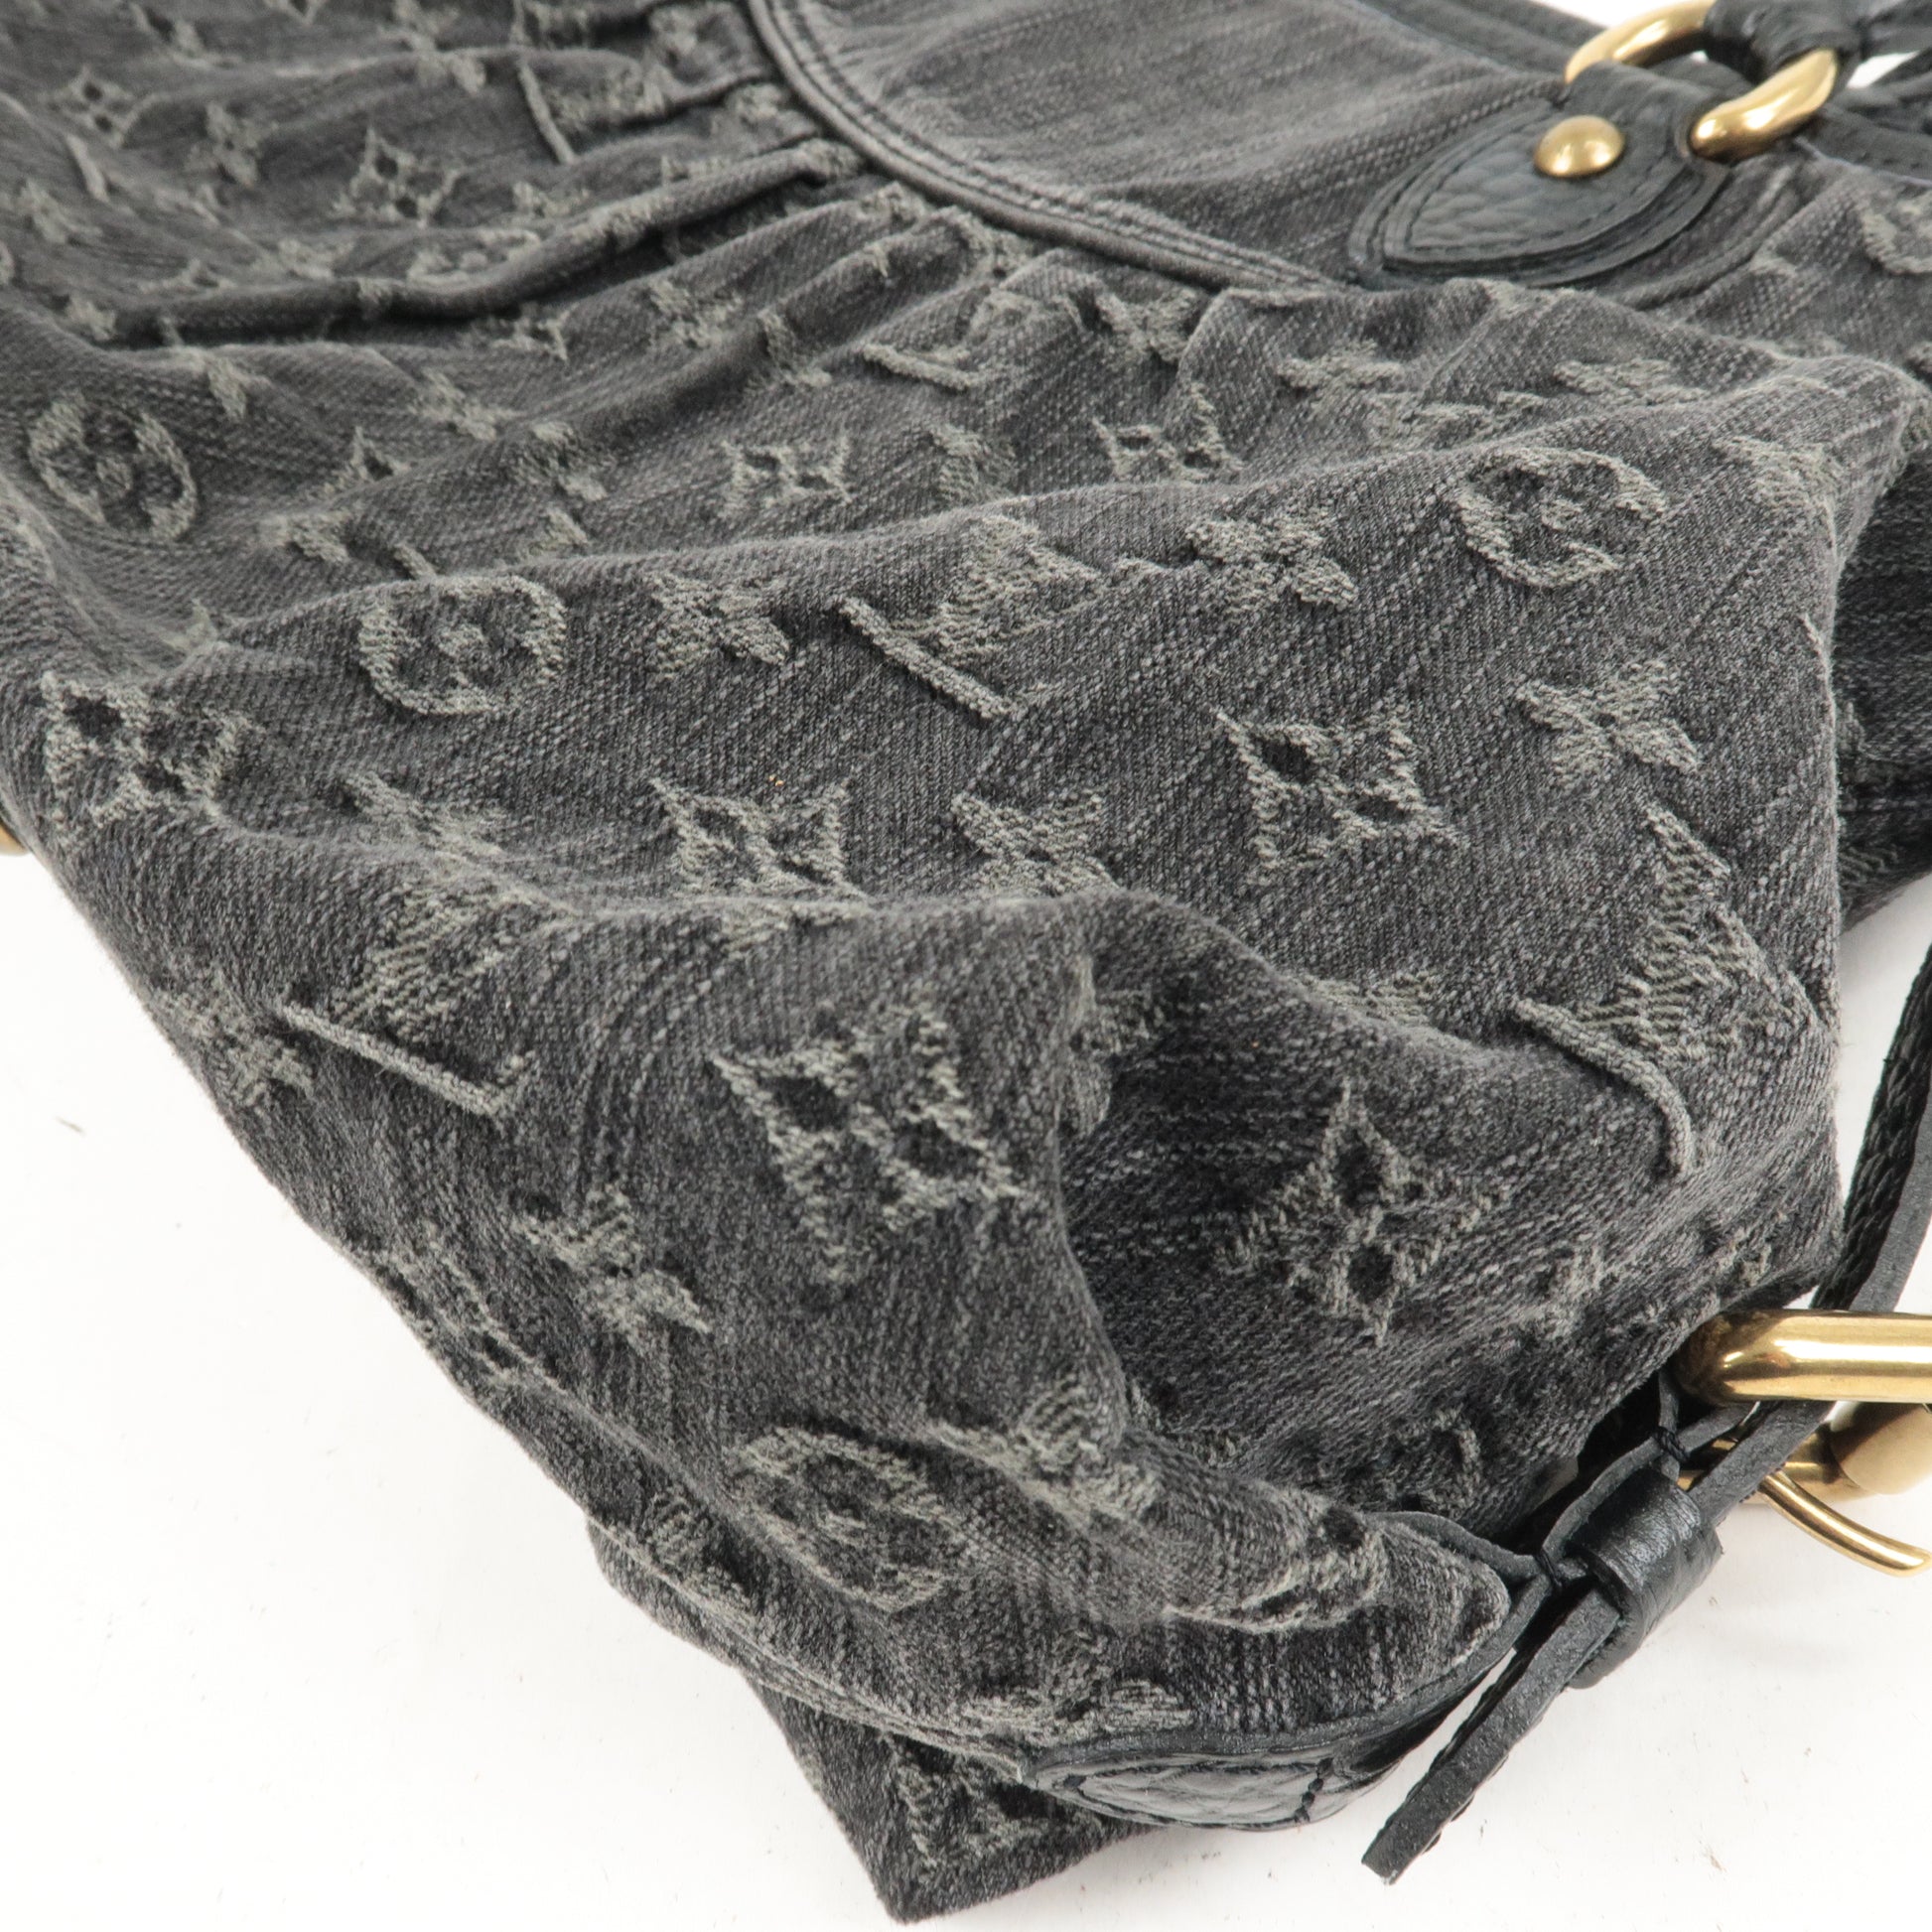 Vuitton - Bag - Denim - M95351 – dct - MM - ep_vintage luxury